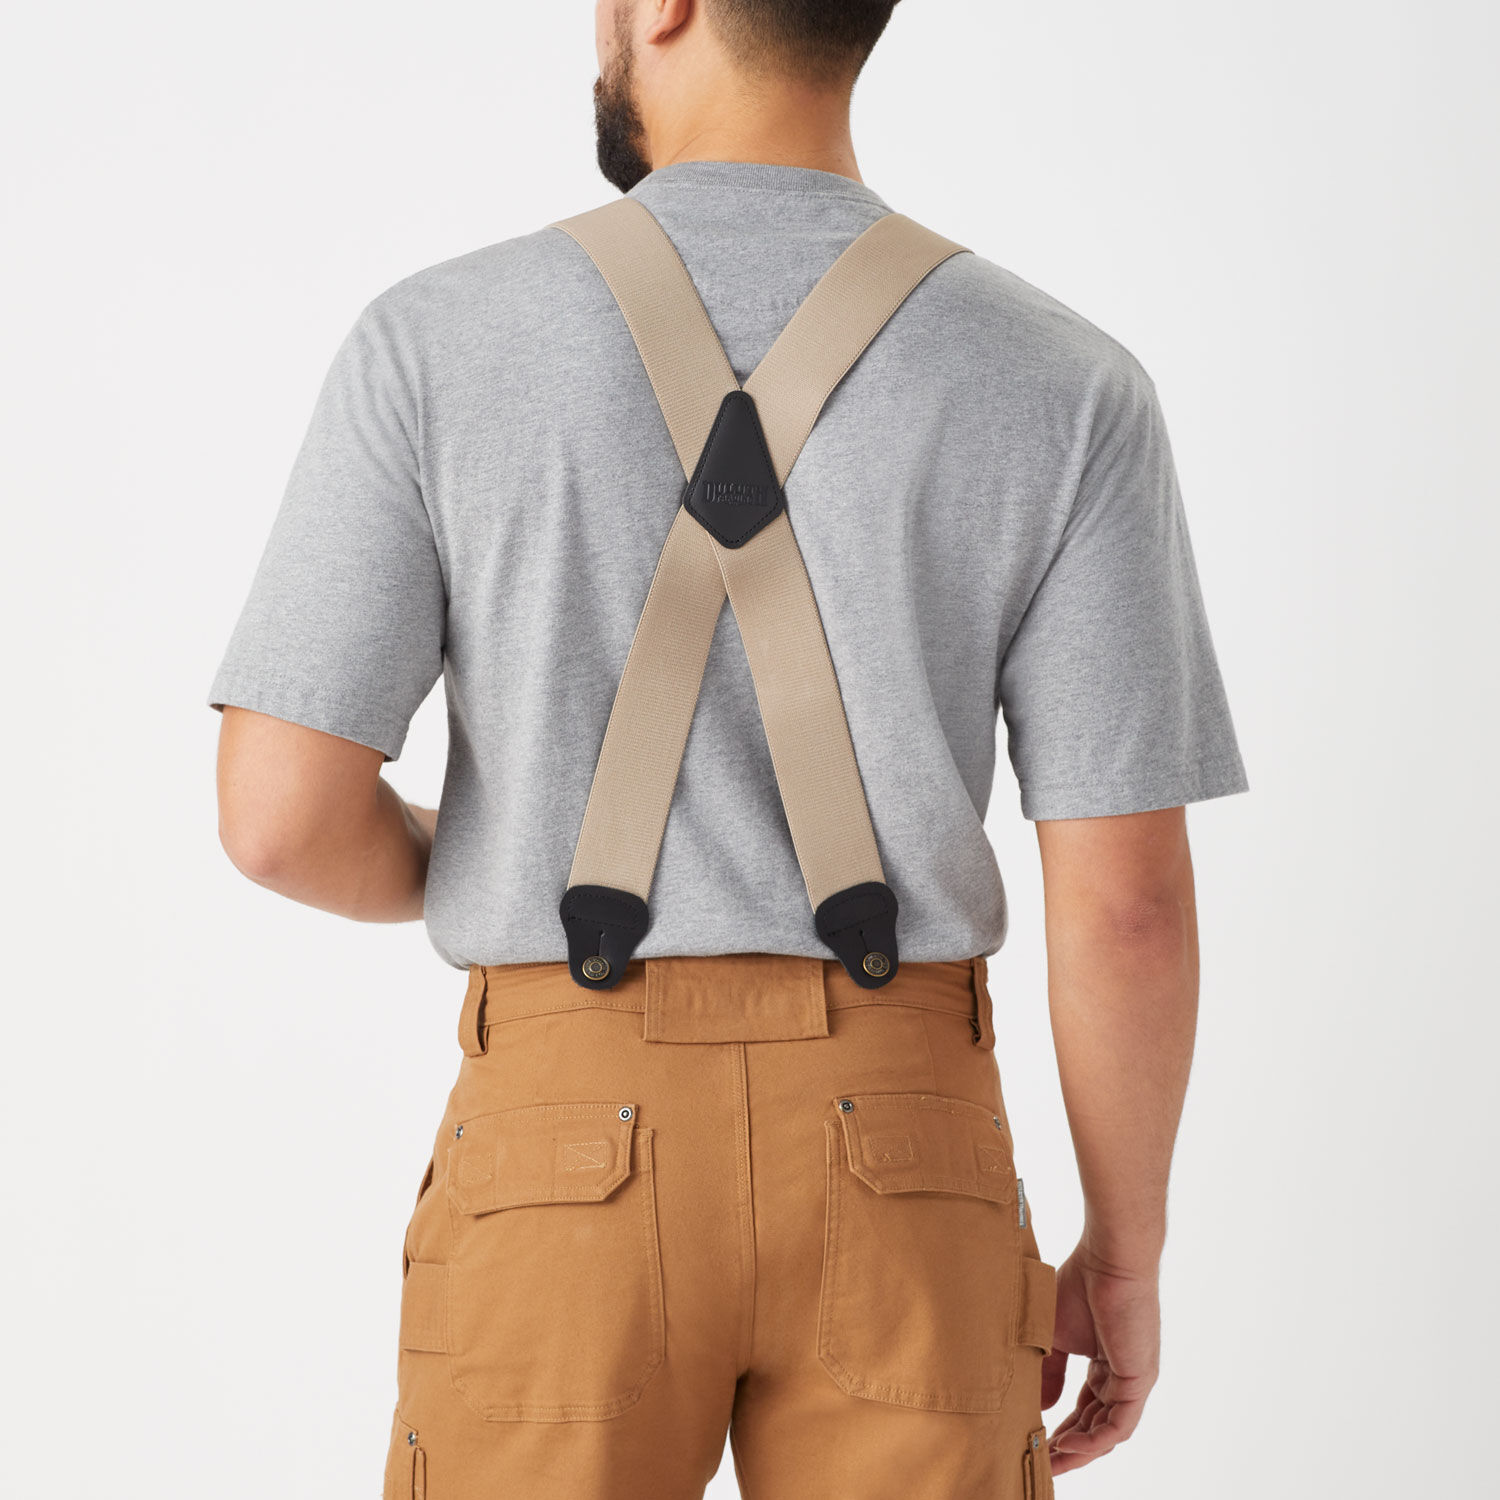 Black Shoulder Straps 4 Clips Suspenders Belt Adjustable Jacquard Yback  Suspenders For Pants